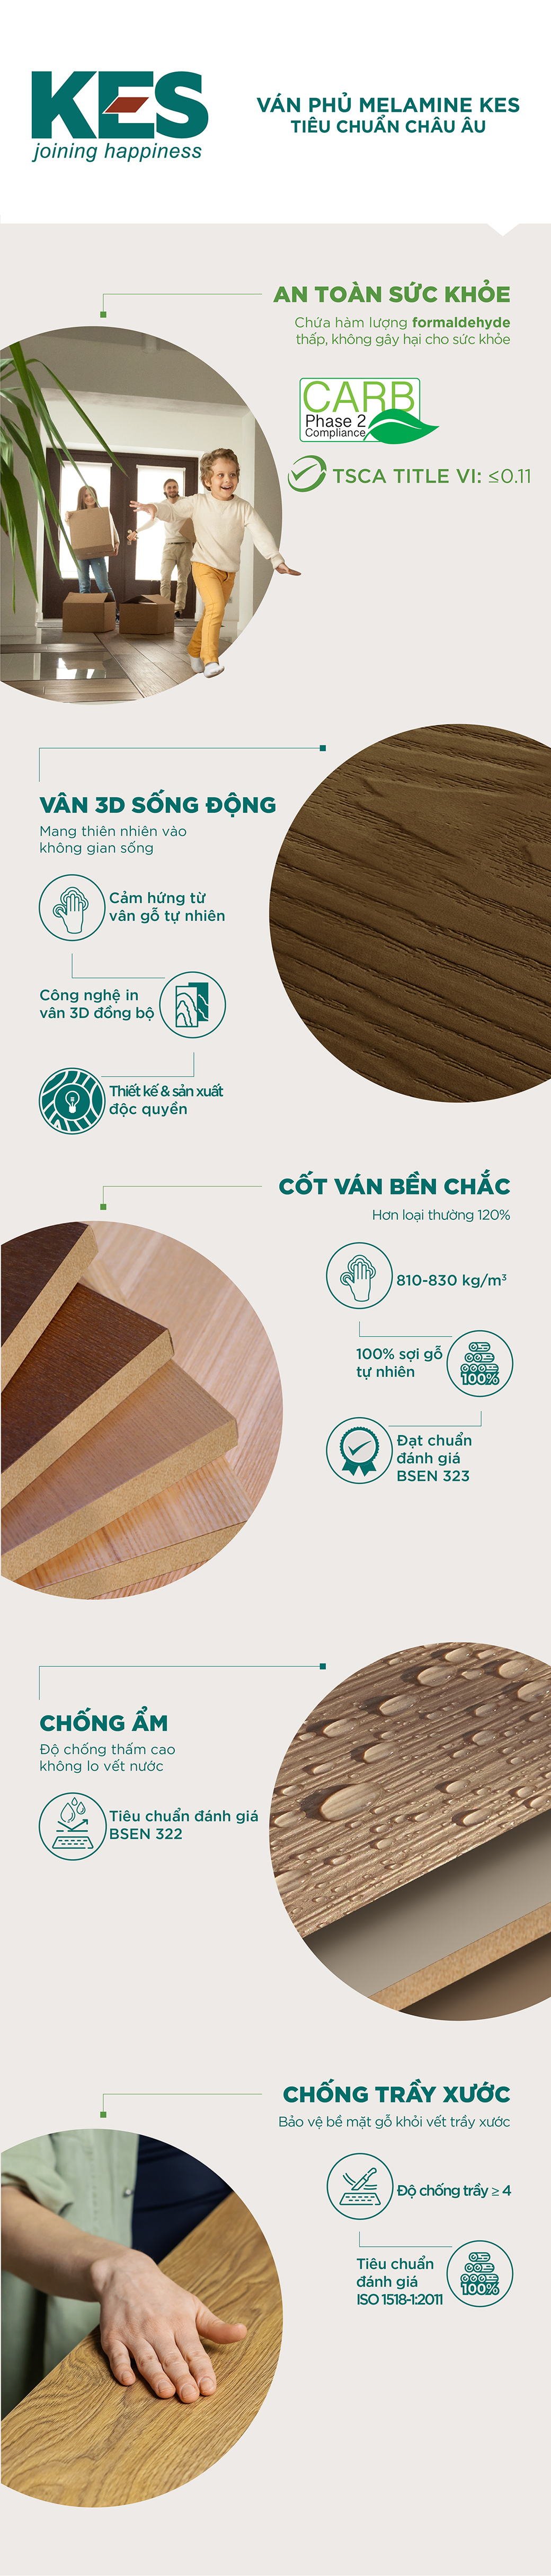 5 định chuẩn chất lượng tạo nên thương hiệu gỗ khác biệt của KES - 1